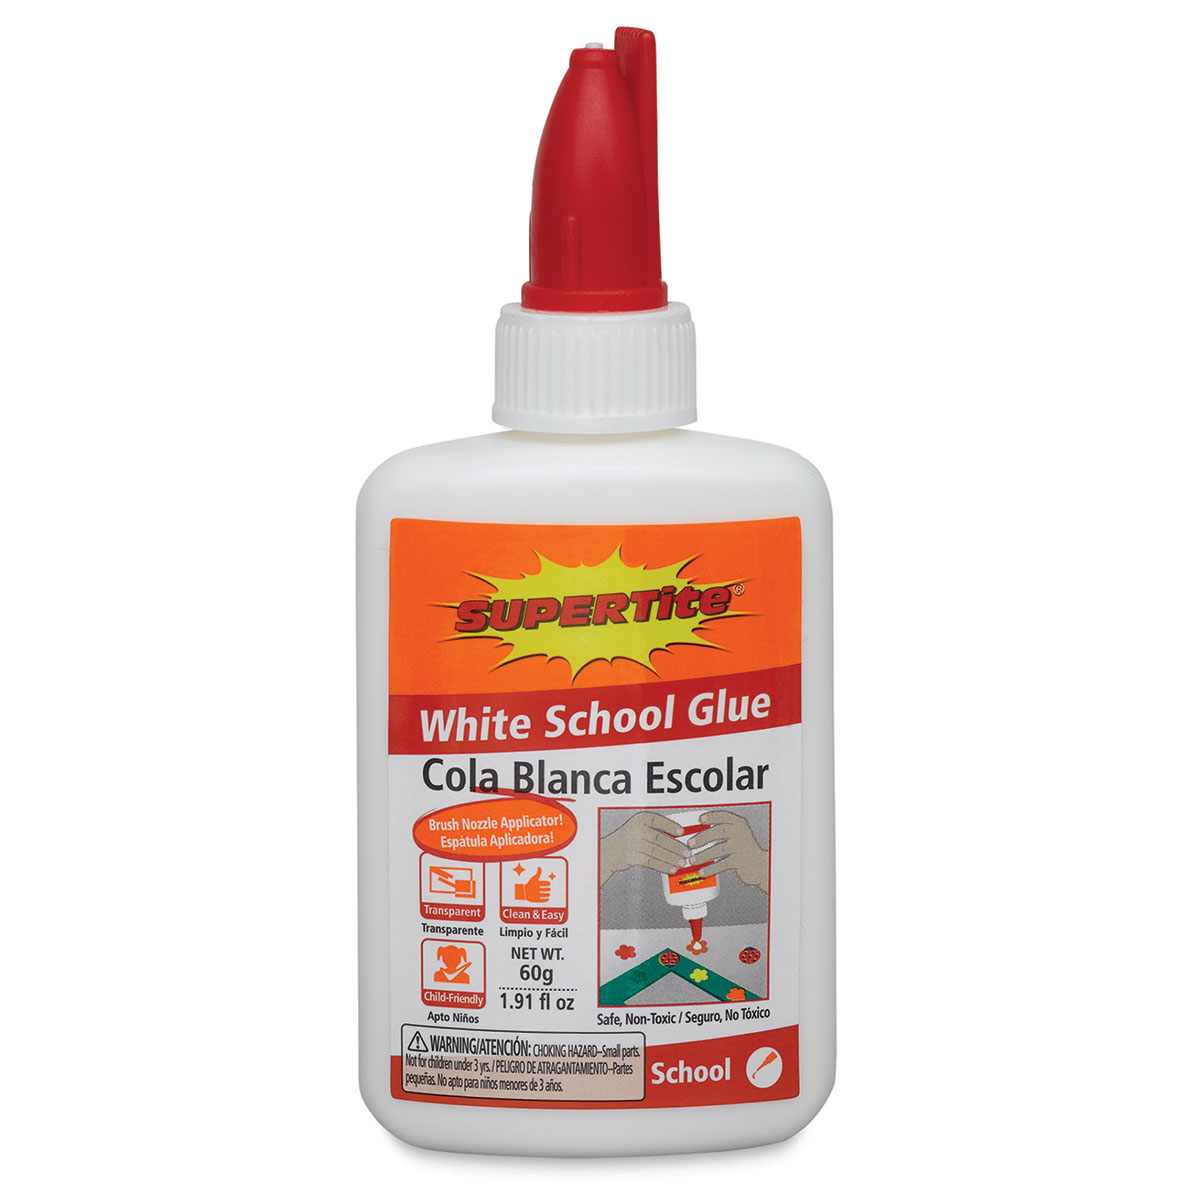 Supertite White School Glue